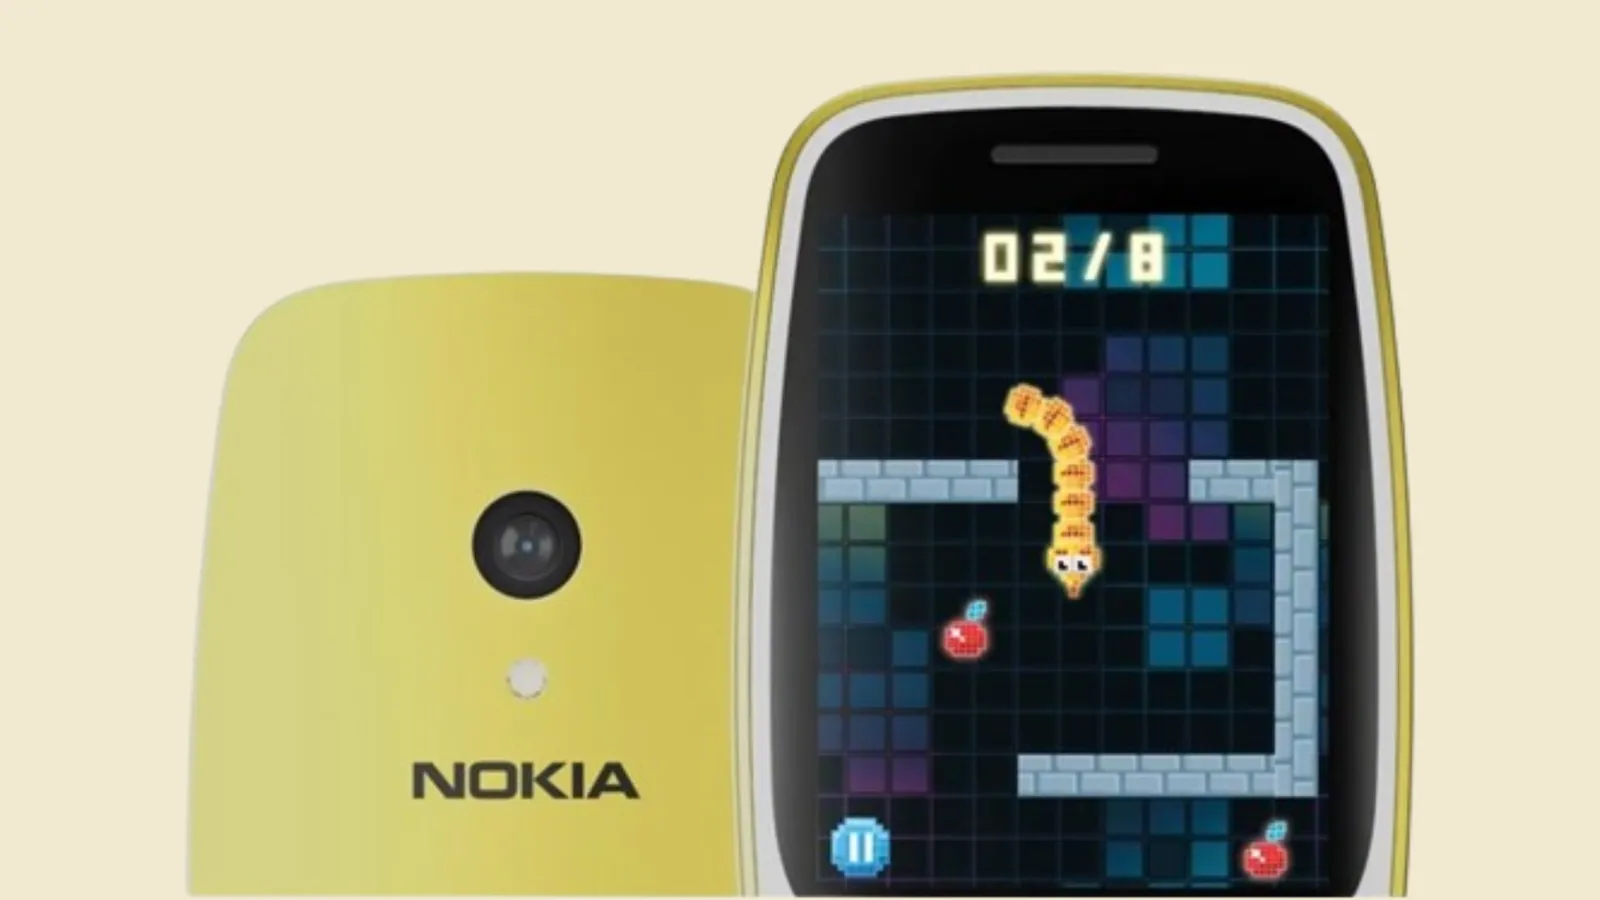 Nokia 3210 Legendaris Kembali Dirilis, Intip Fitur dan Harganya!